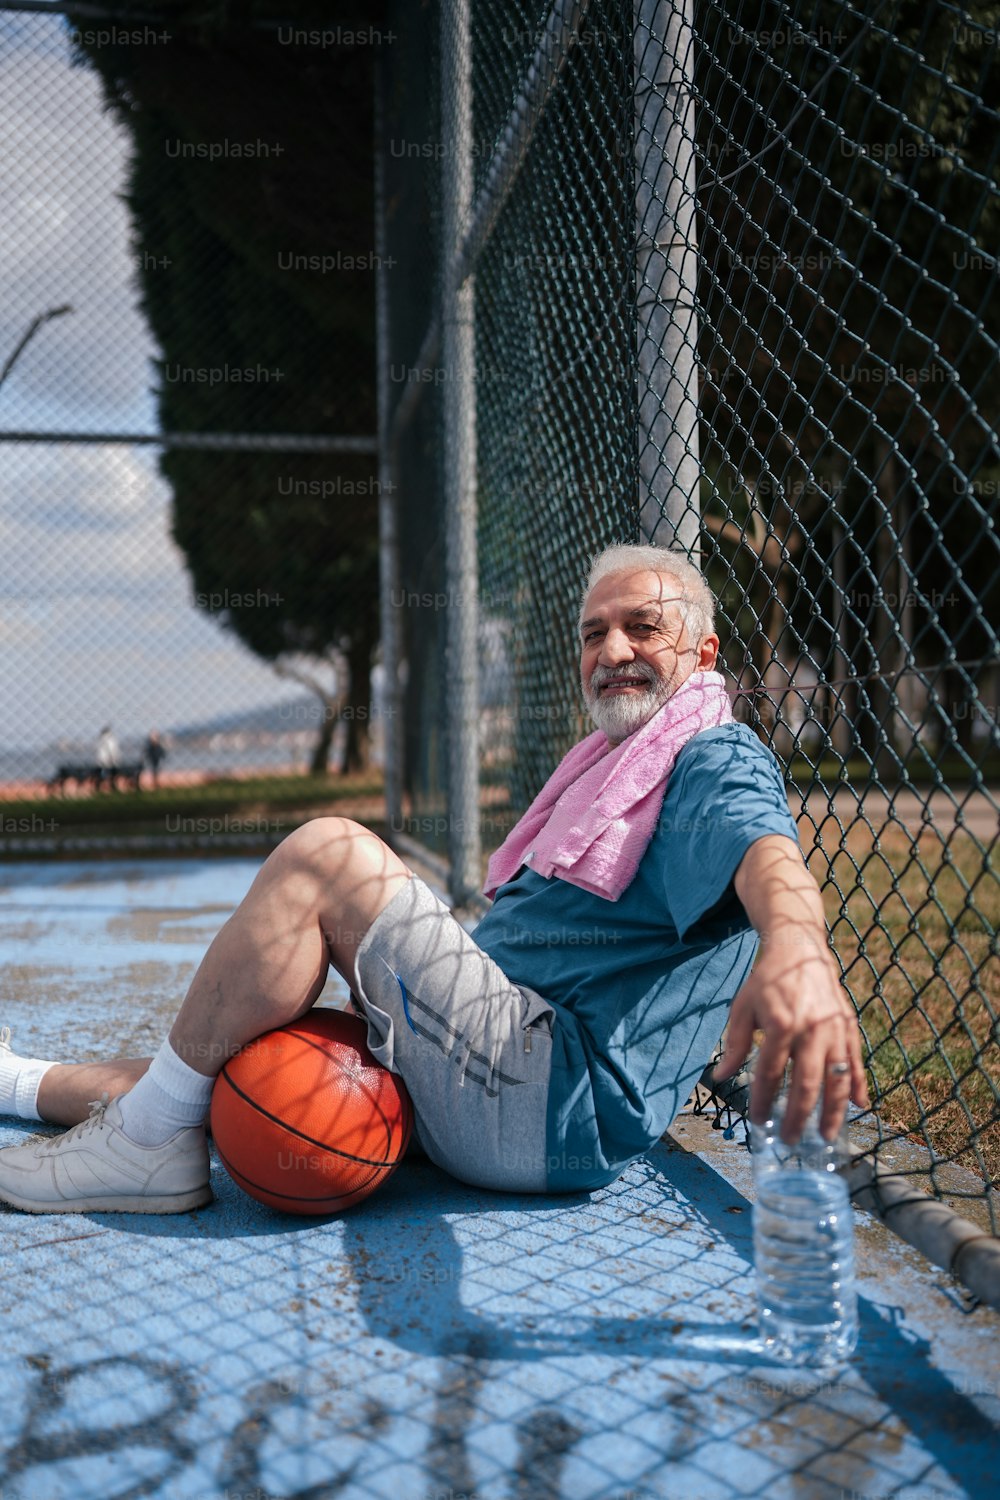 バスケットボールを持って地面に座って�いる男